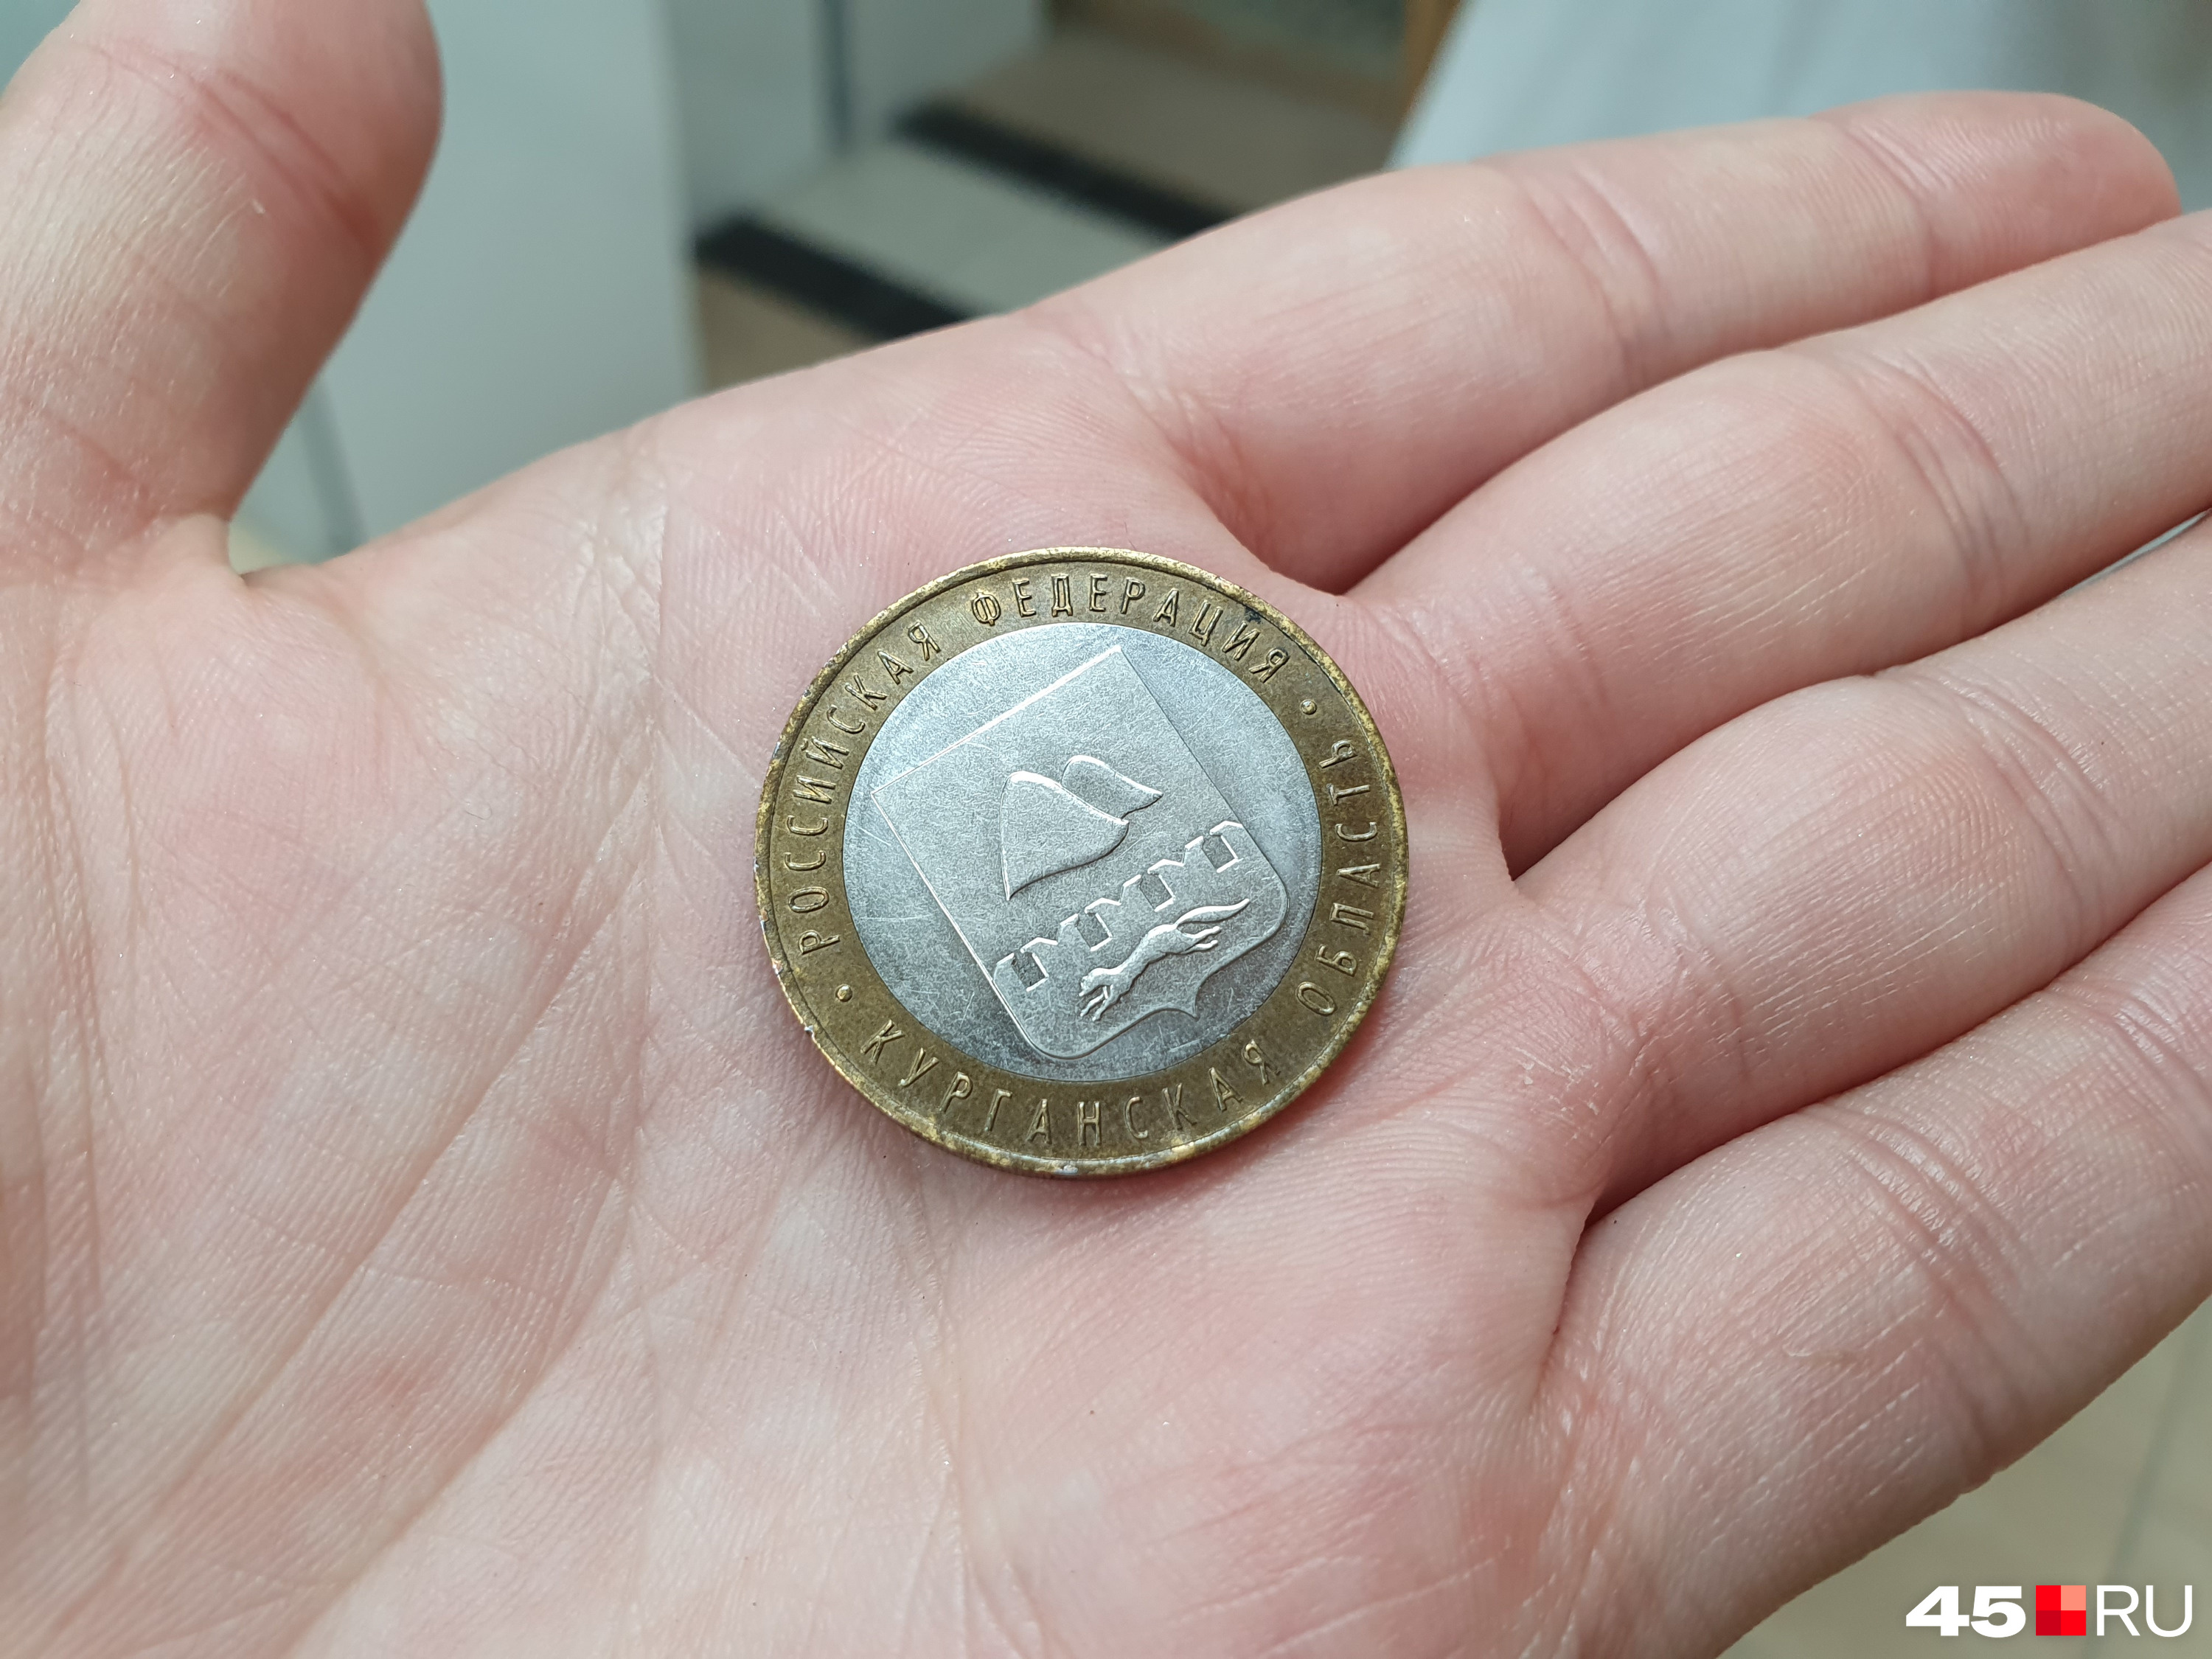 Во время интервью попросили добавить в коллекцию музей Банка России вот эту десятирублевую монету с гербом Курганской области